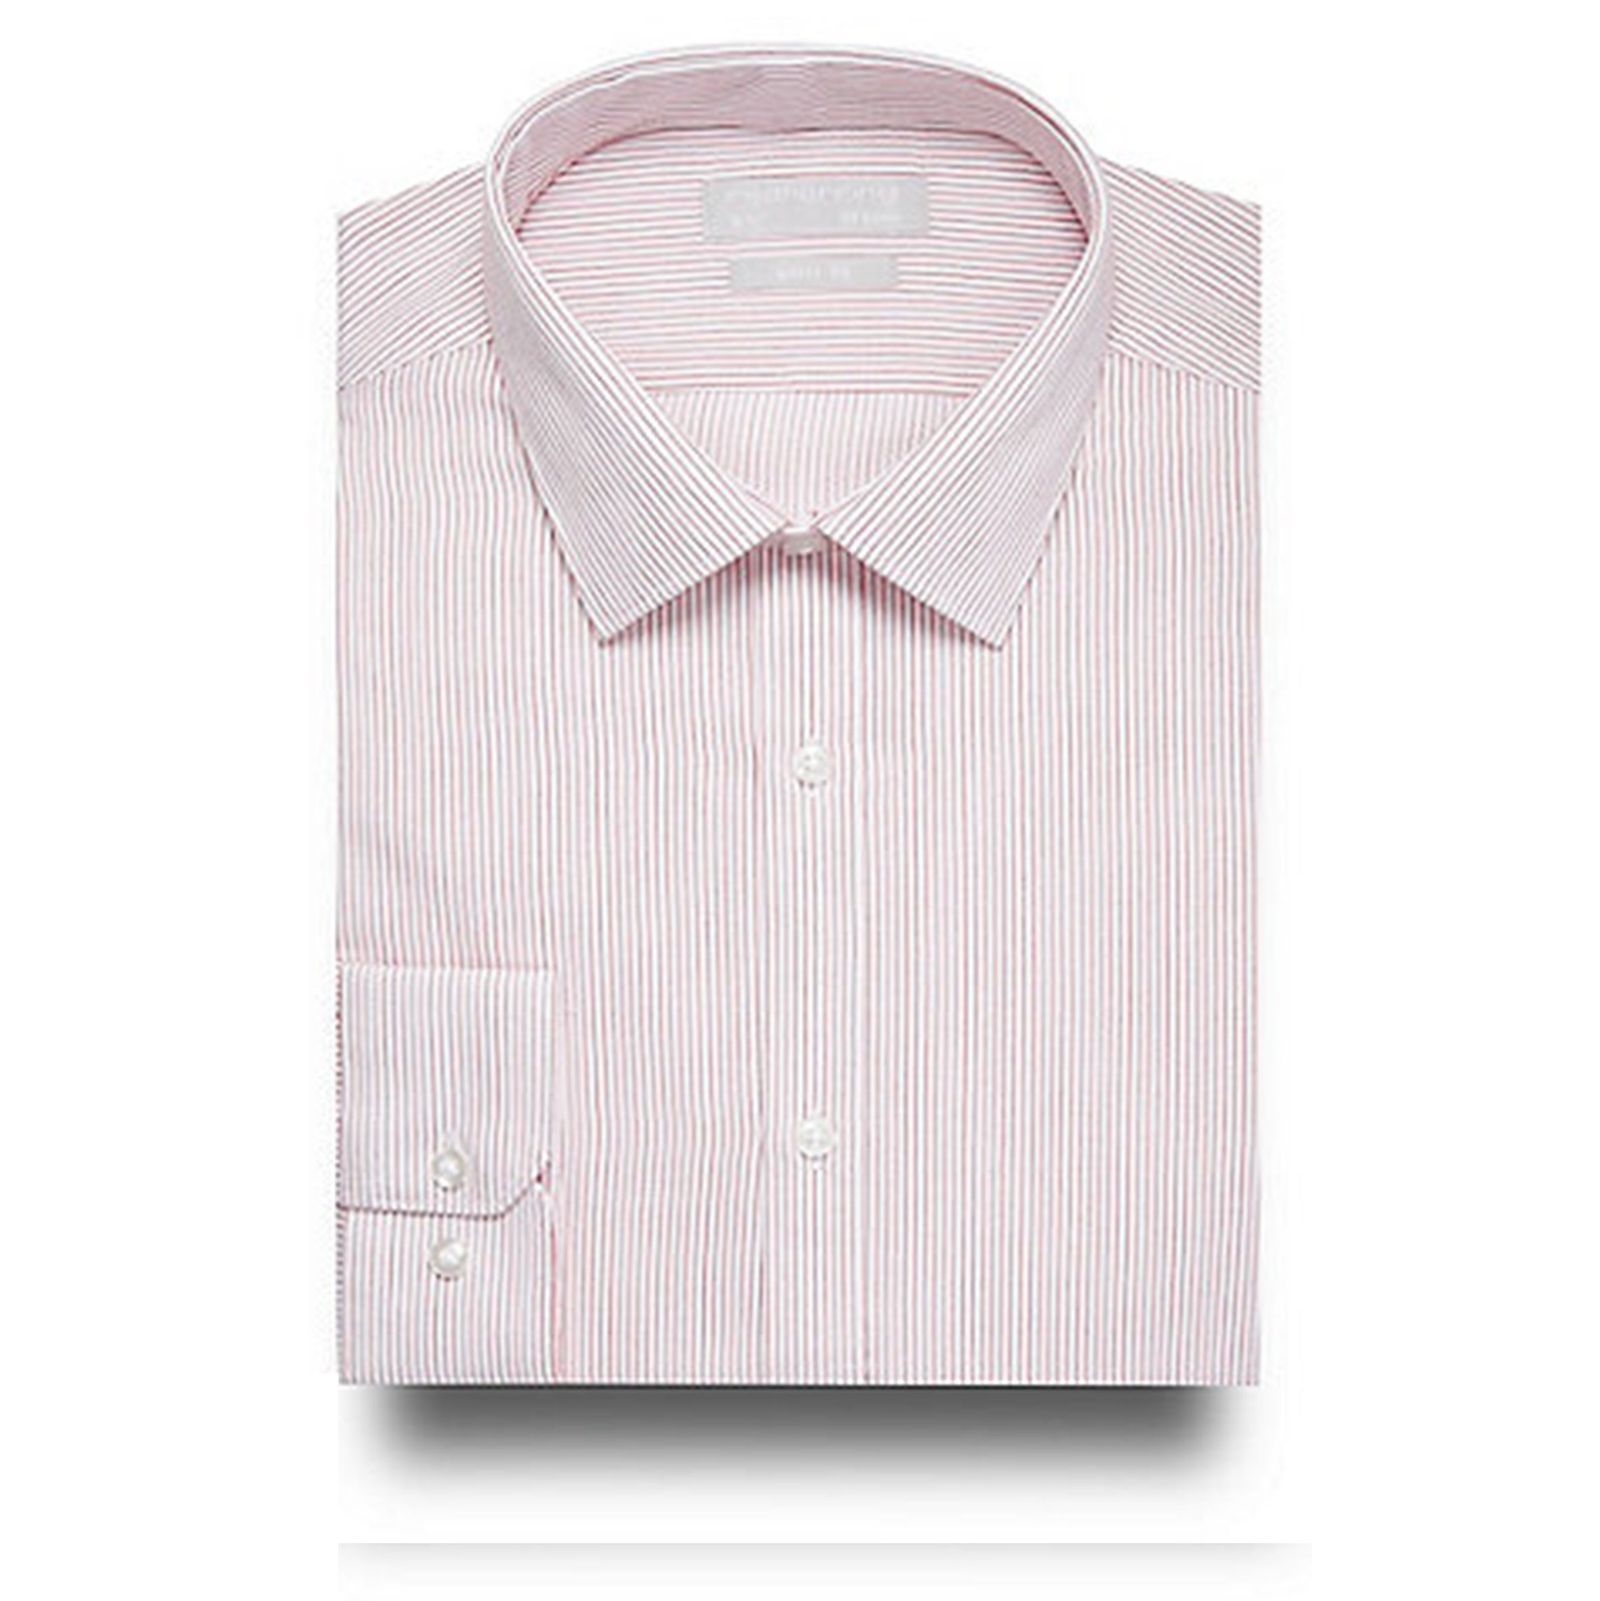 پیراهن رسمی مردانه - رد هرینگ - صورتي - 2